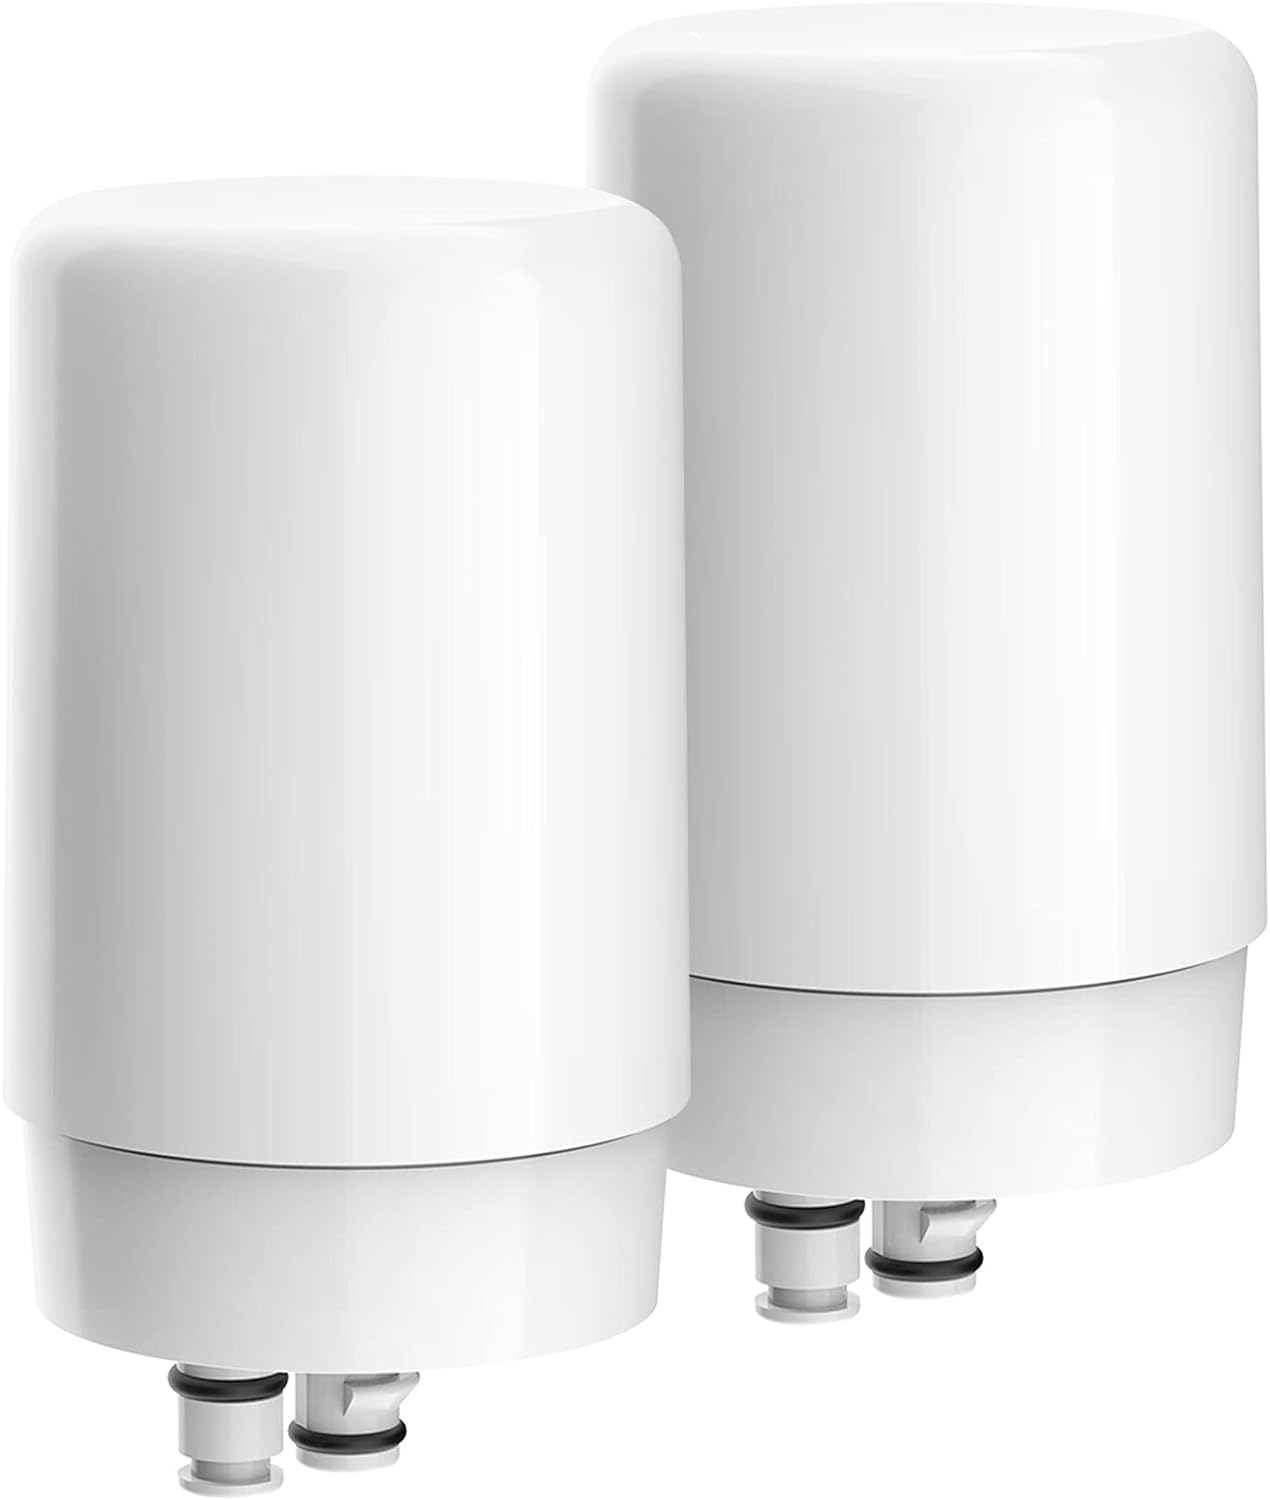 AQUA CREST Faucet Filter Replacement, Replacement for Brita Faucet Filter, Brita 36311 On Tap Water Filtration System, Brita FR-200, FF-10